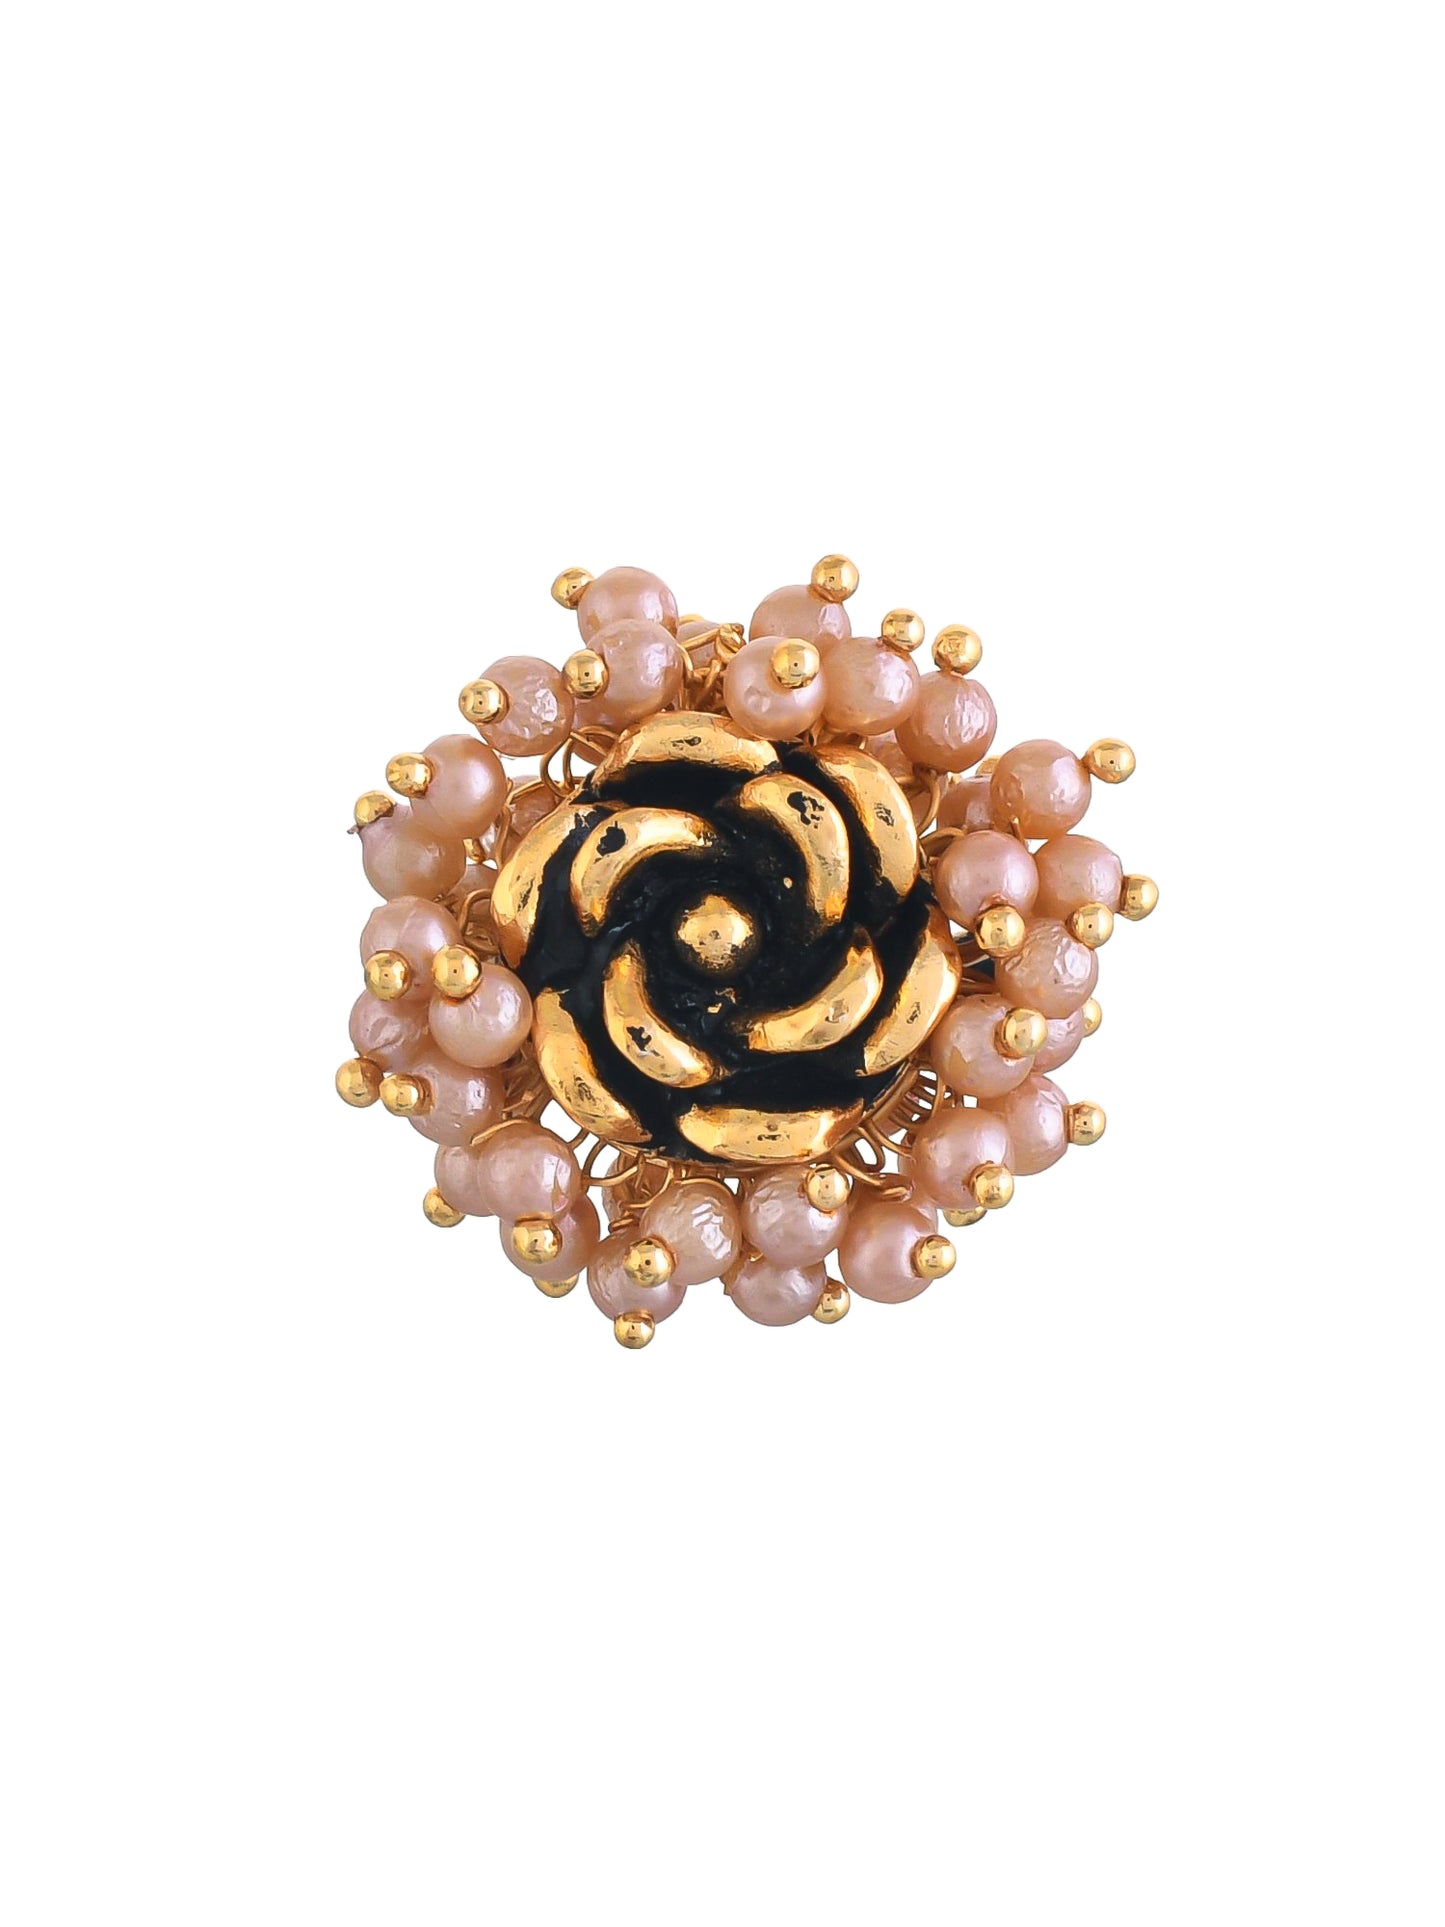 Golden tone Pearl Rose Flower Ring for womens & girls